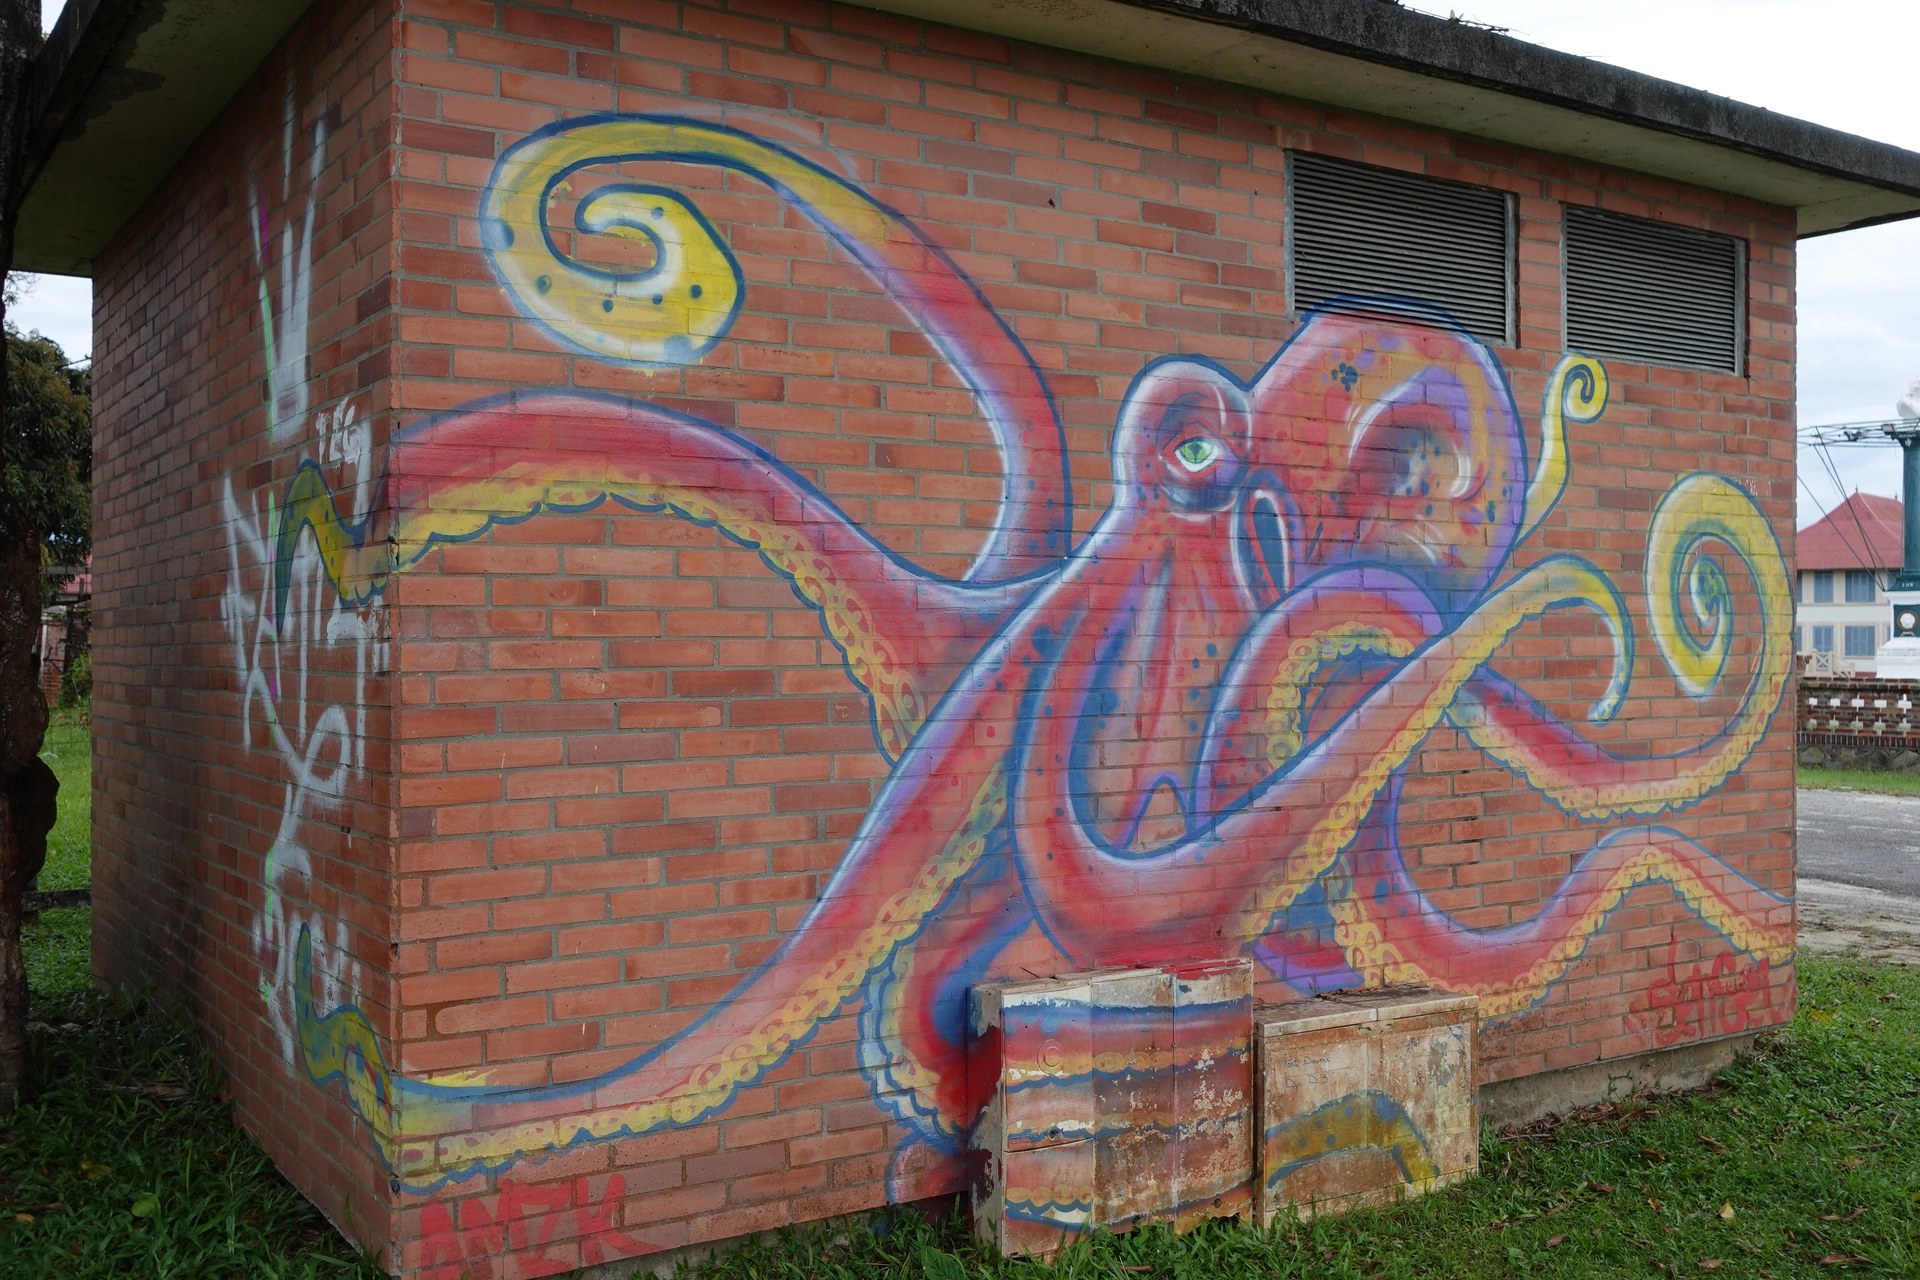 Oeuvre de Street Art réalisée par Sensei à Saint-Laurent-du-Maroni